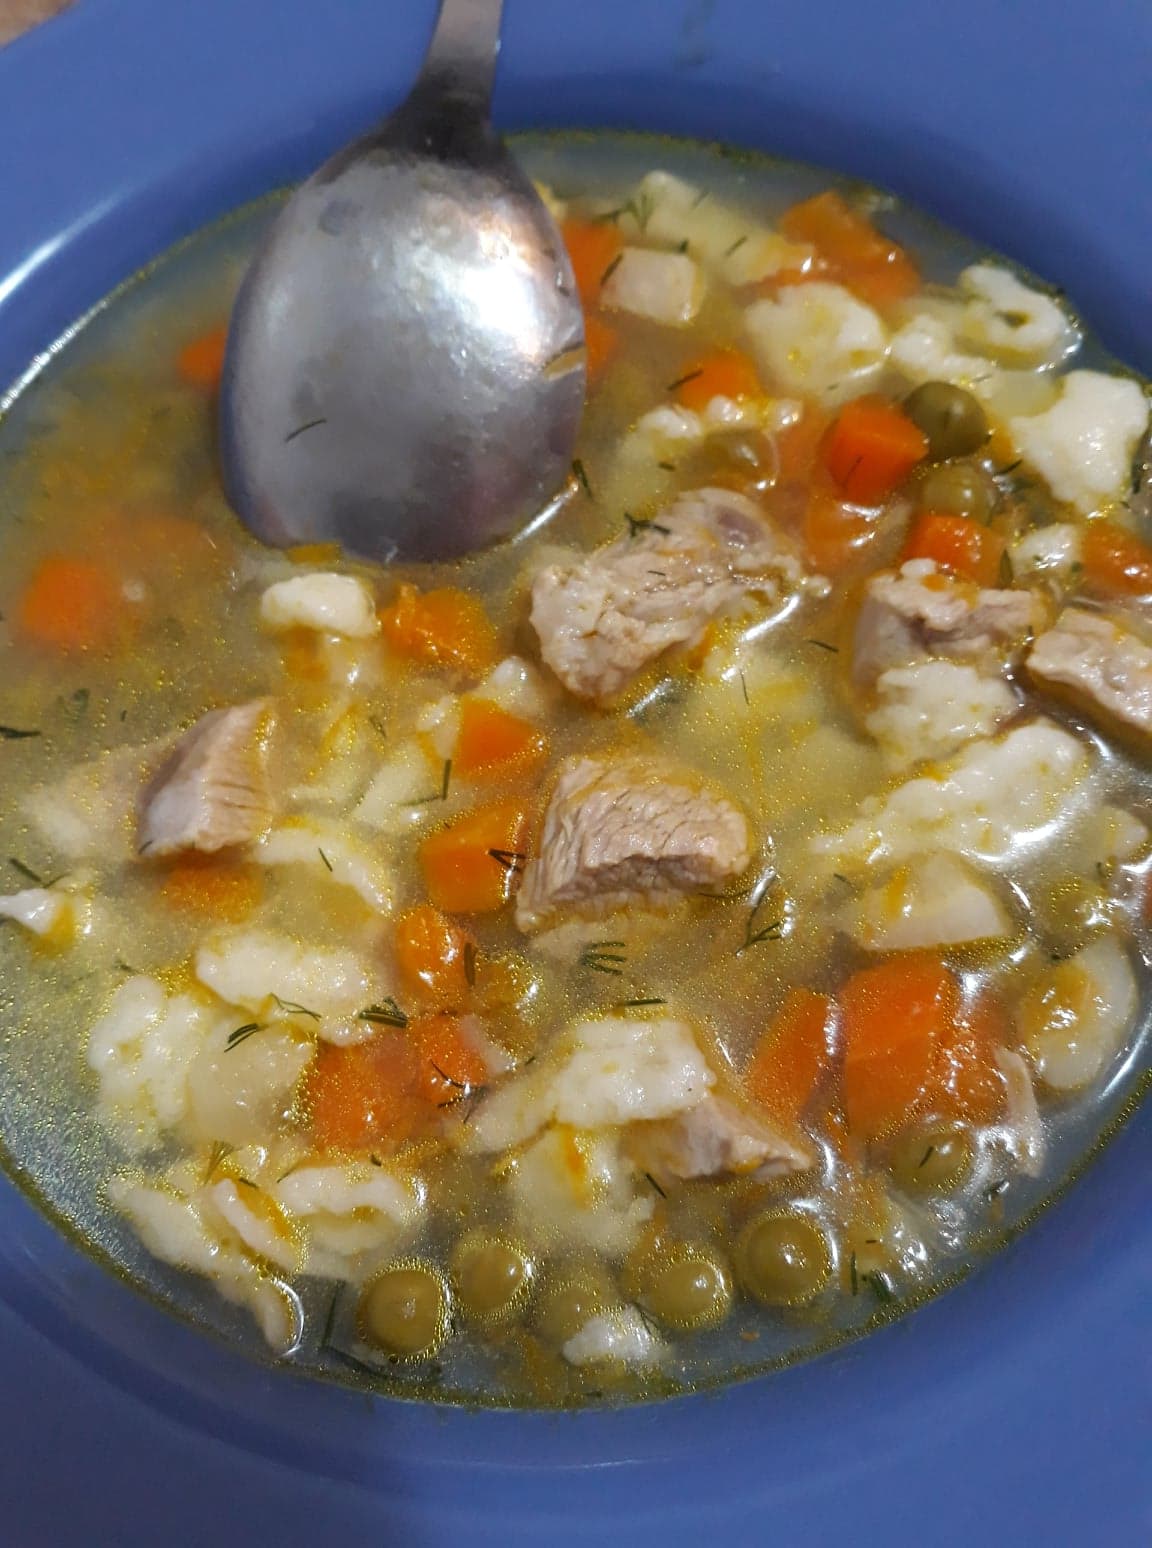 Supa de mazare cu pulpe de rata